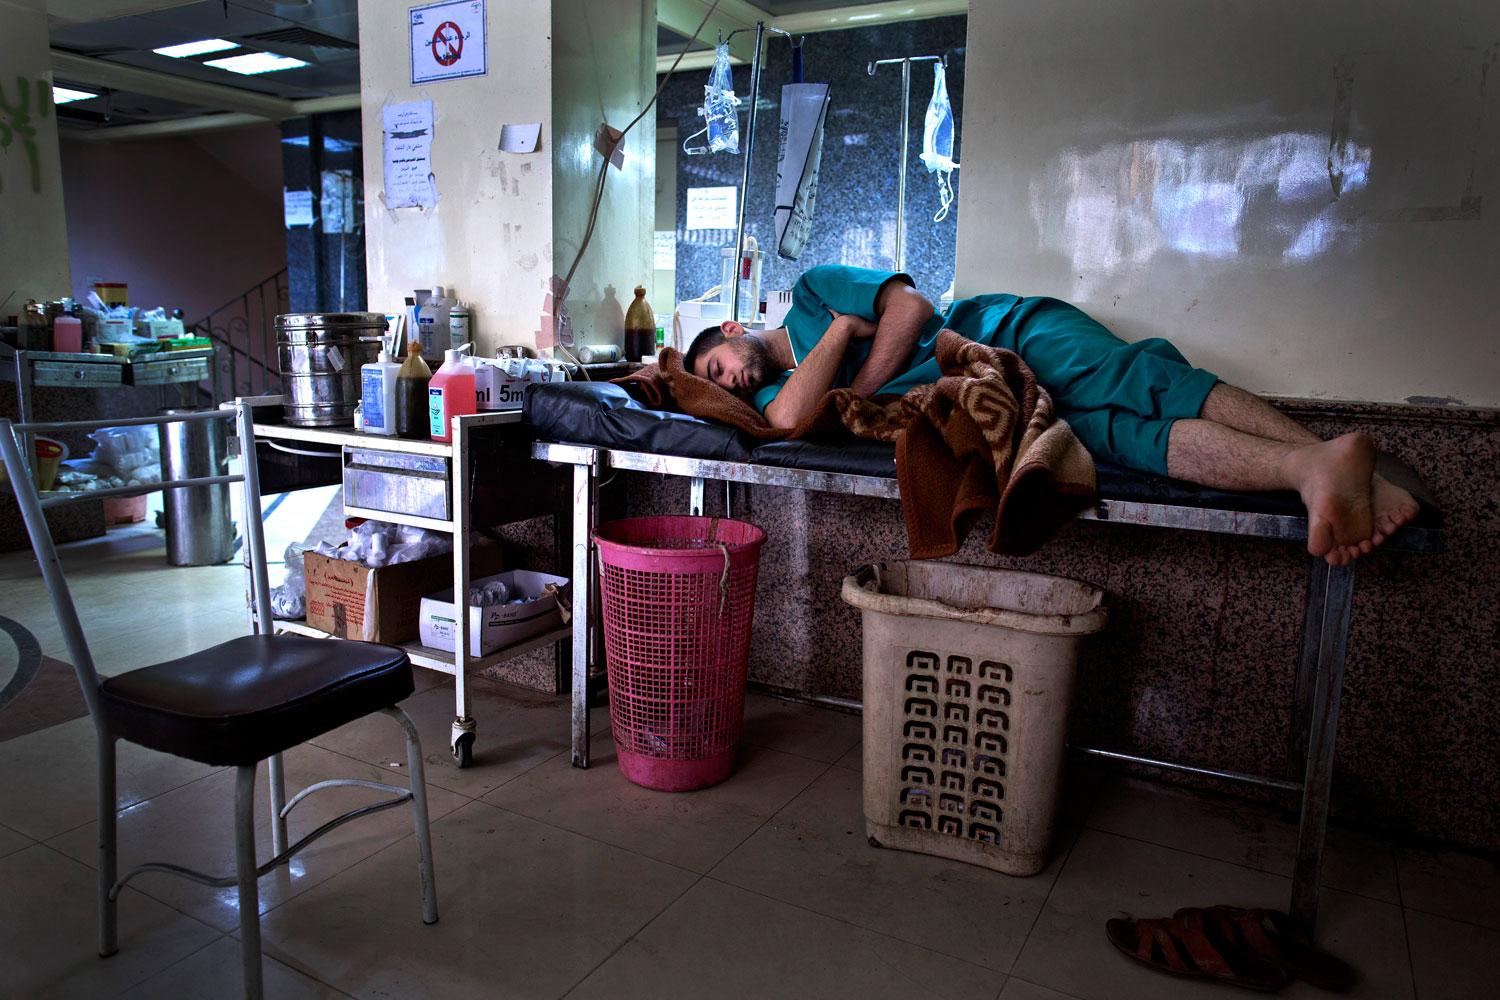 En sköterska passar på att vila lite när det är lungt. Dom flesta som arbetar på sjukhuset bor även där.